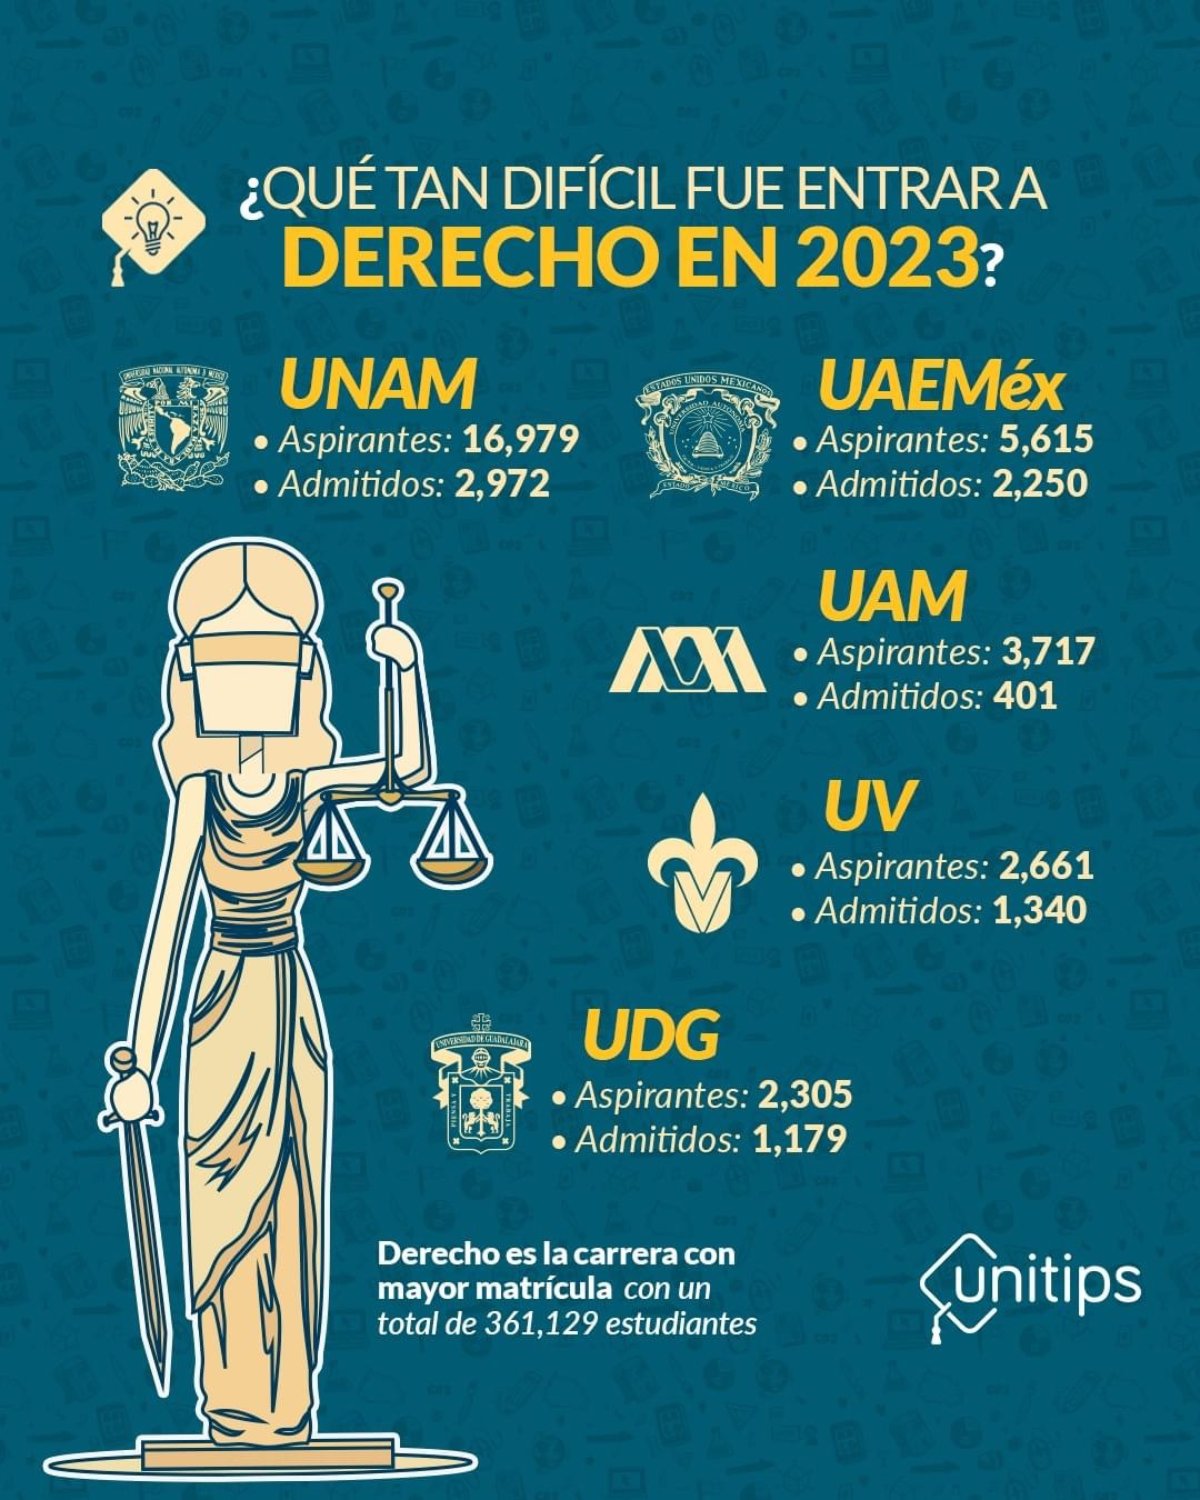 ¿Qué tan difícil es entrar a la carrera de Derecho en la UNAM?